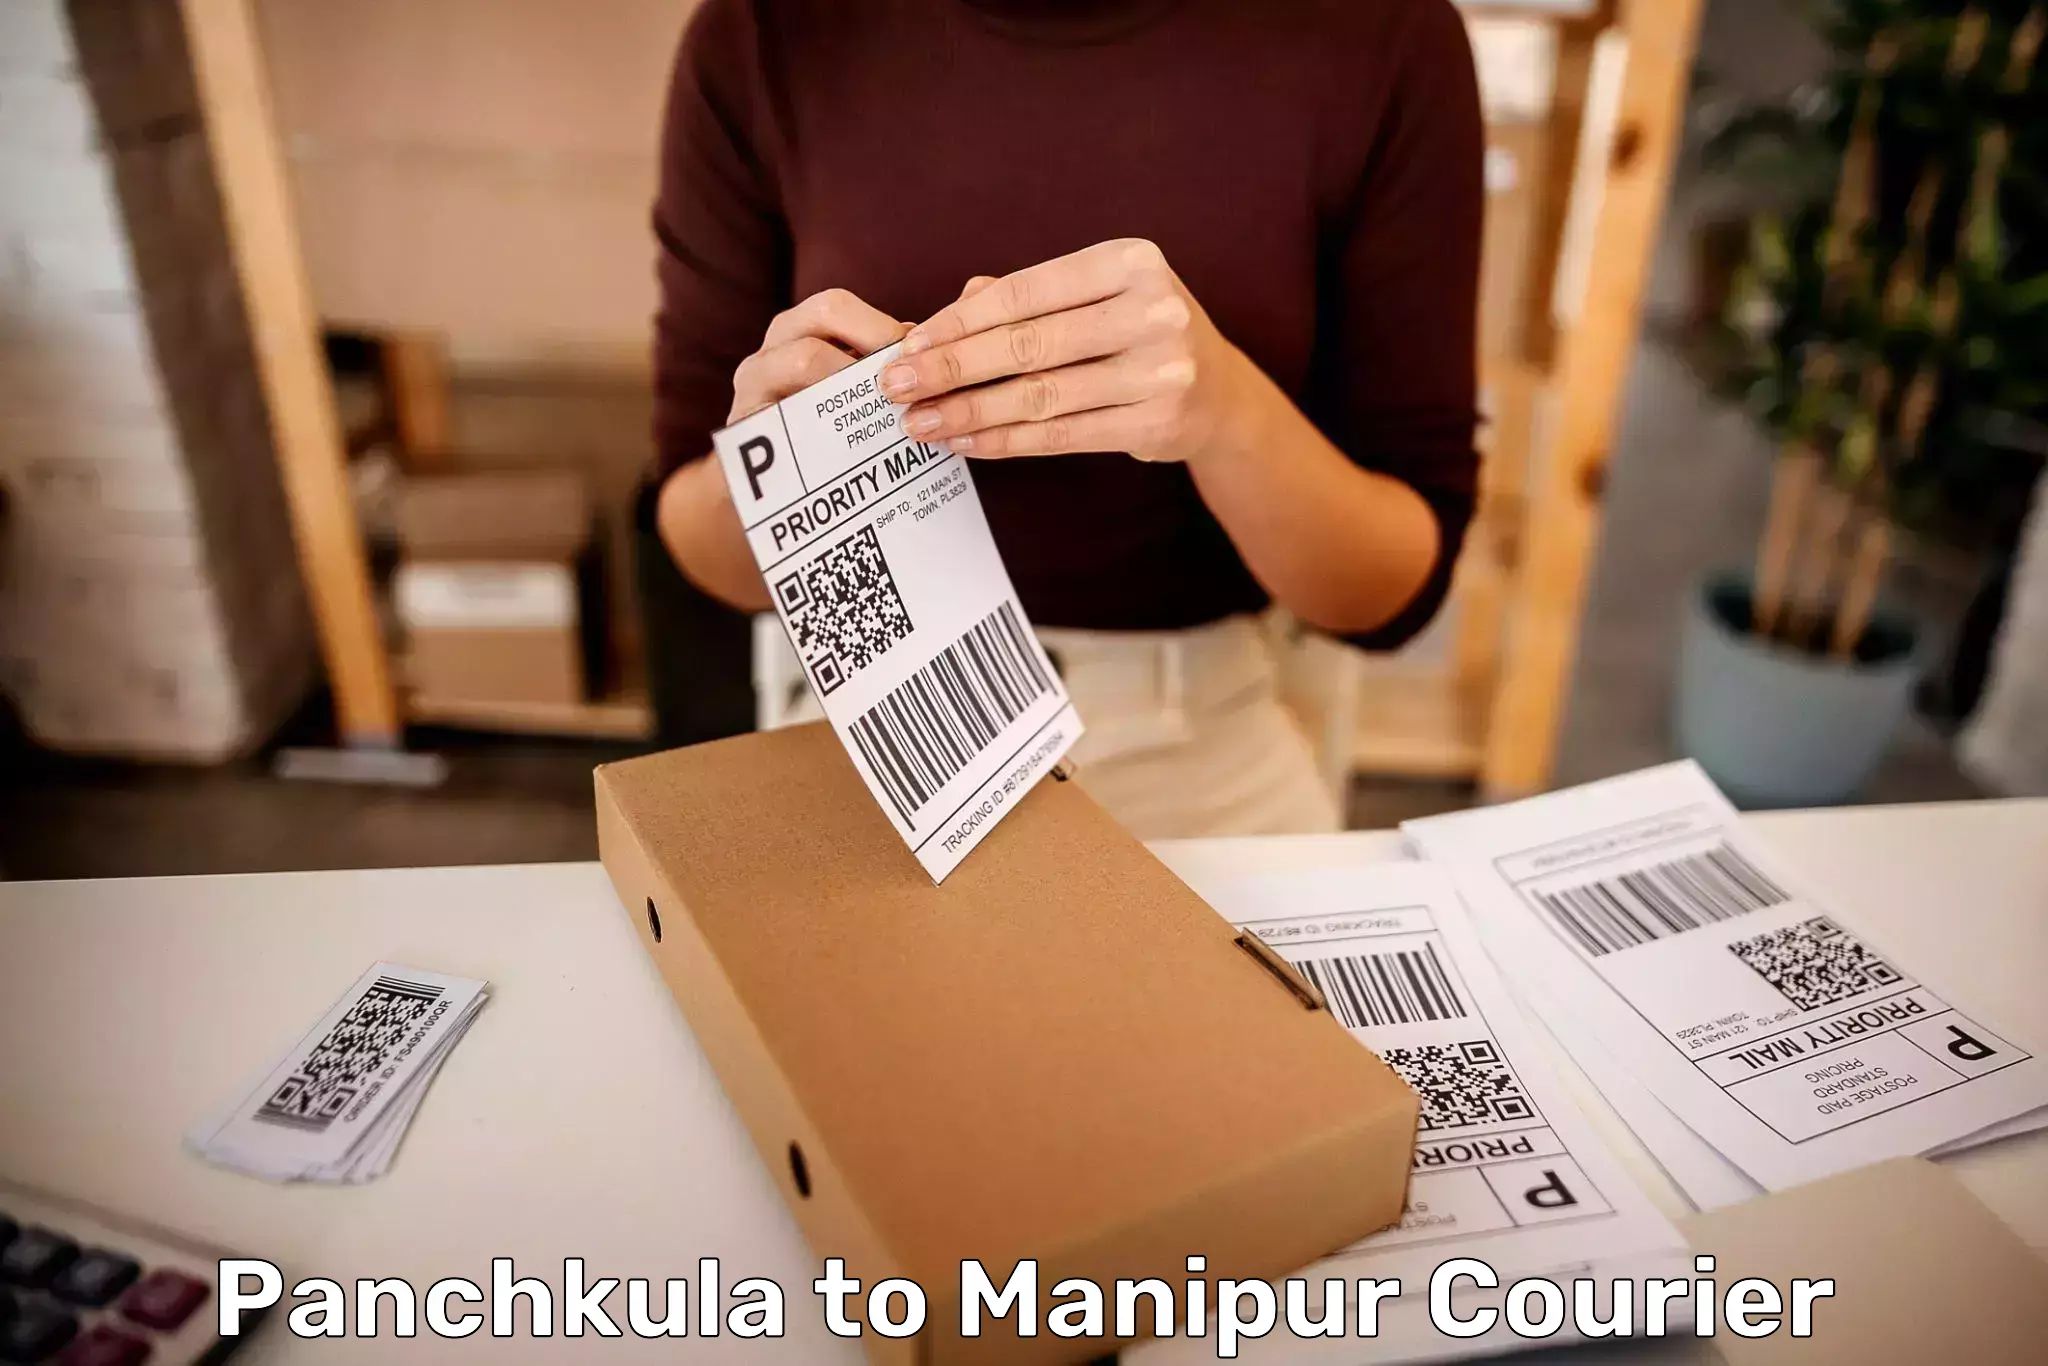 Baggage shipping service Panchkula to Chandel